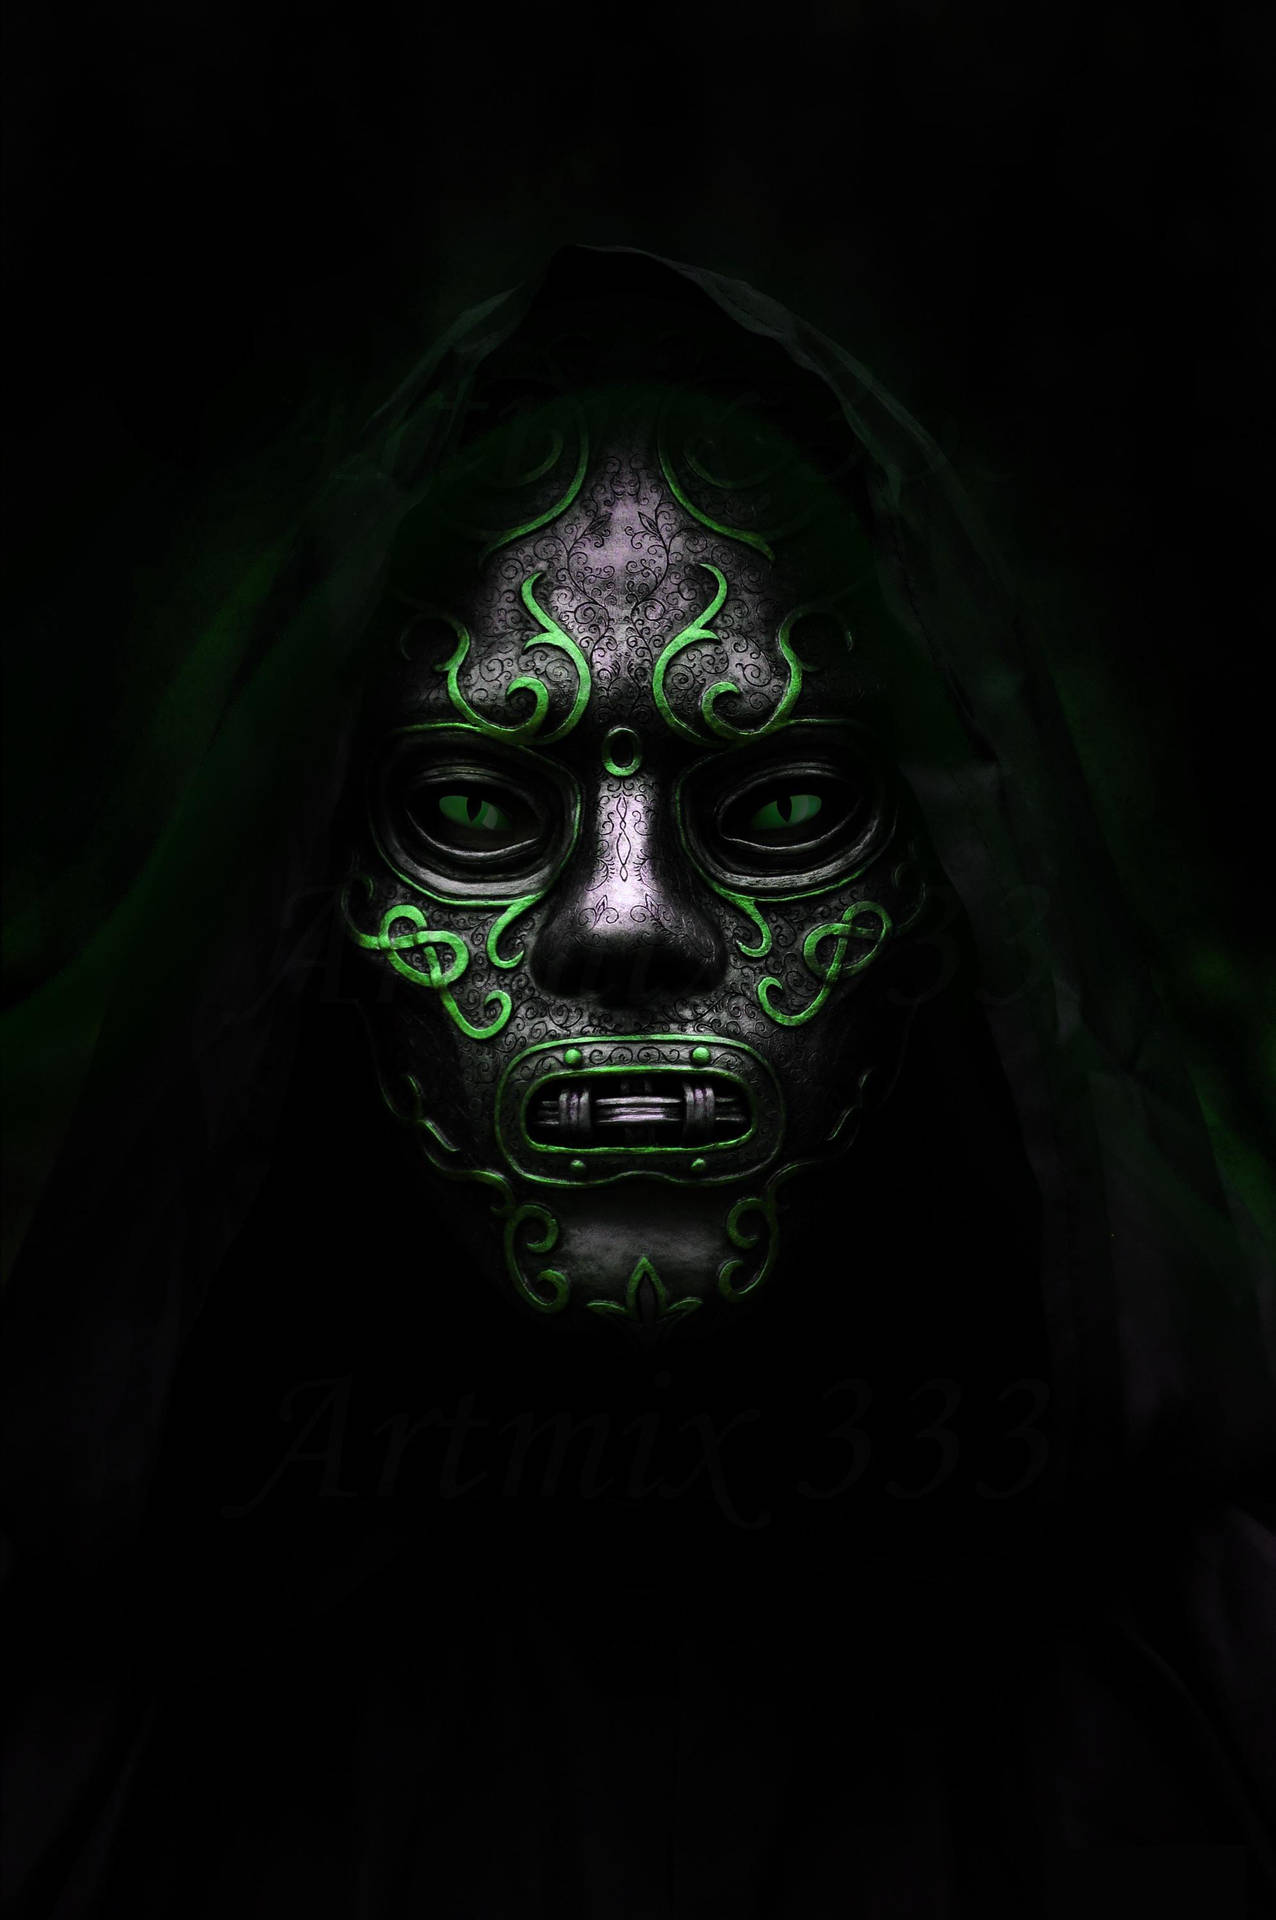 Doctor Doom-inspired Mask